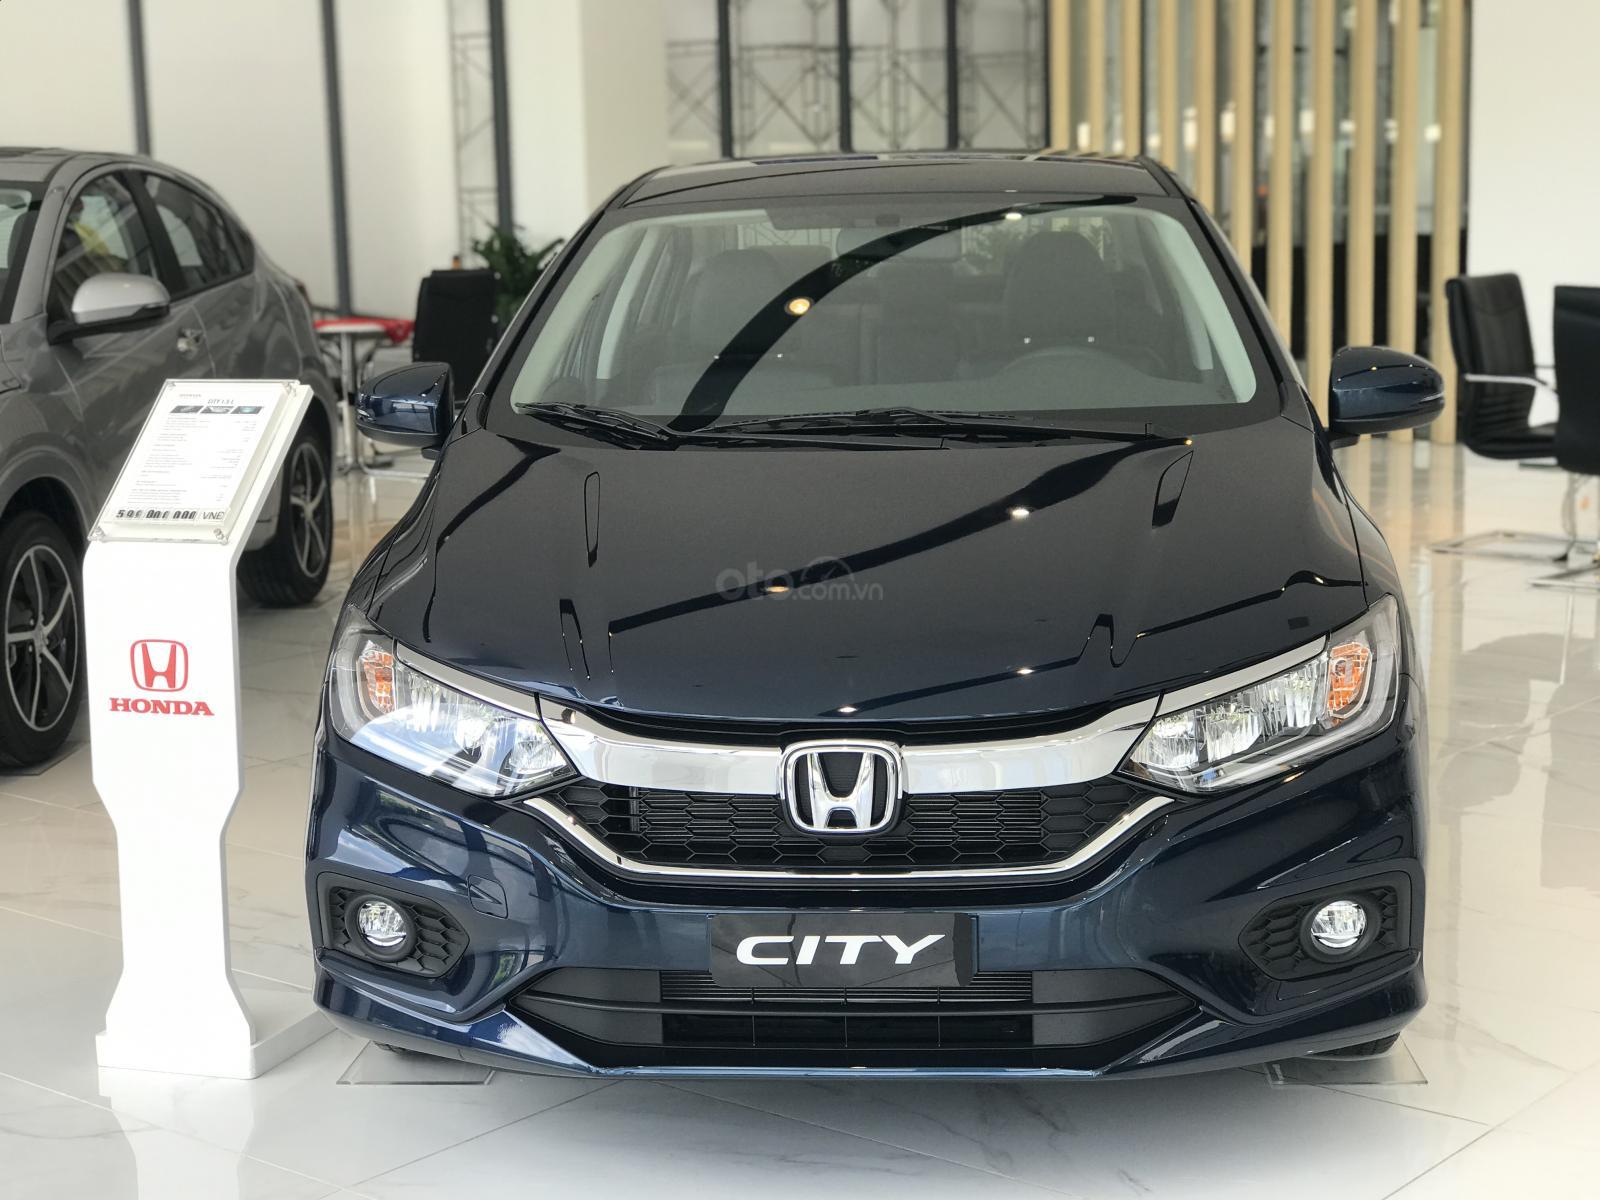 Honda CR-V có doanh số bán chạy nhất hãng trong tháng 5/2019 2a